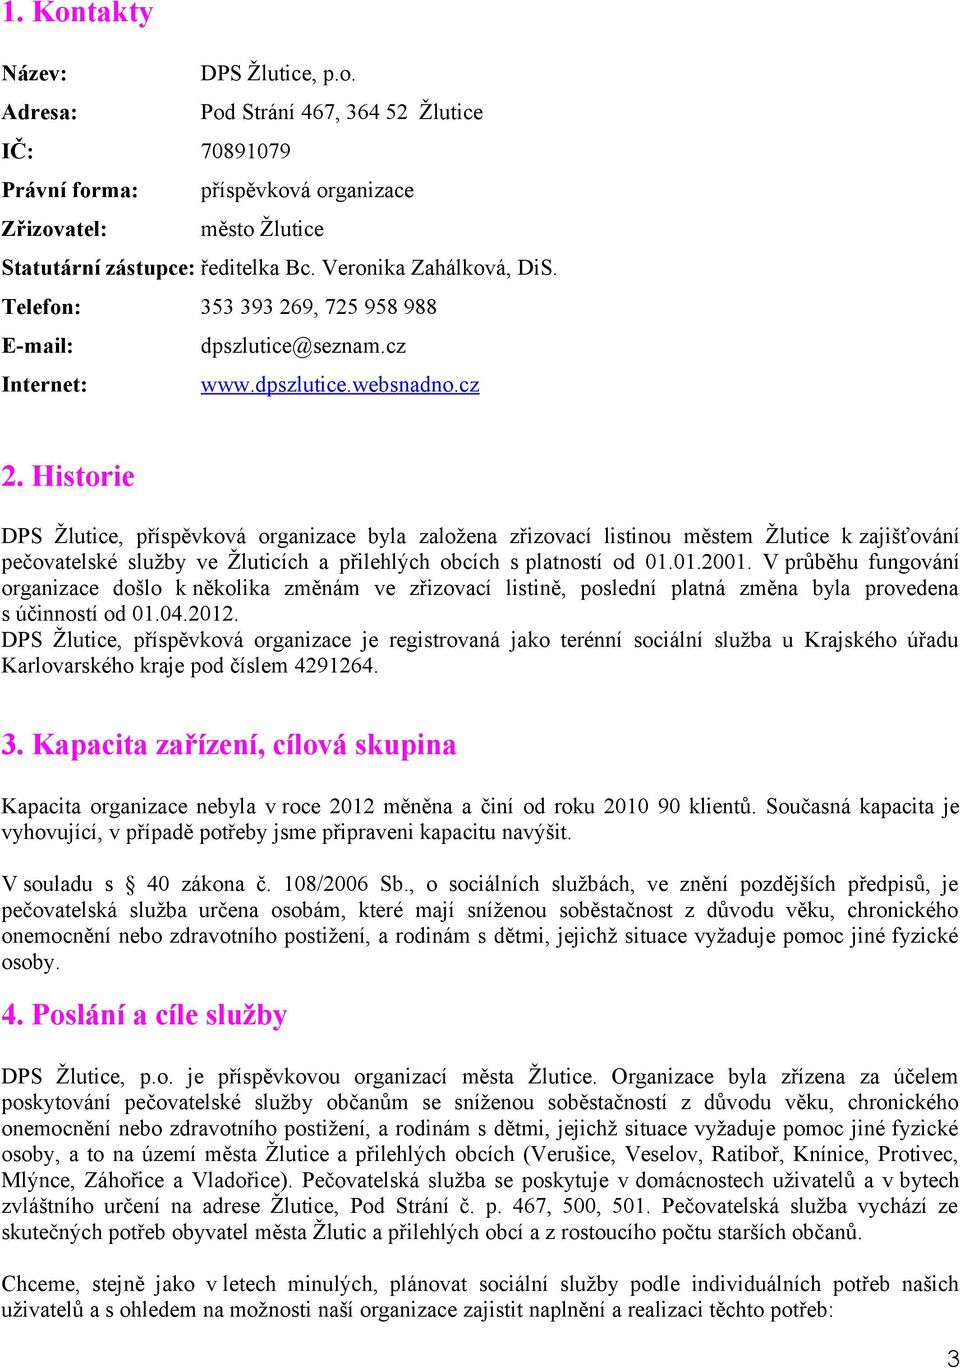 Historie DPS Žlutice, příspěvková organizace byla založena zřizovací listinou městem Žlutice k zajišťování pečovatelské služby ve Žluticích a přilehlých obcích s platností od 01.01.2001.